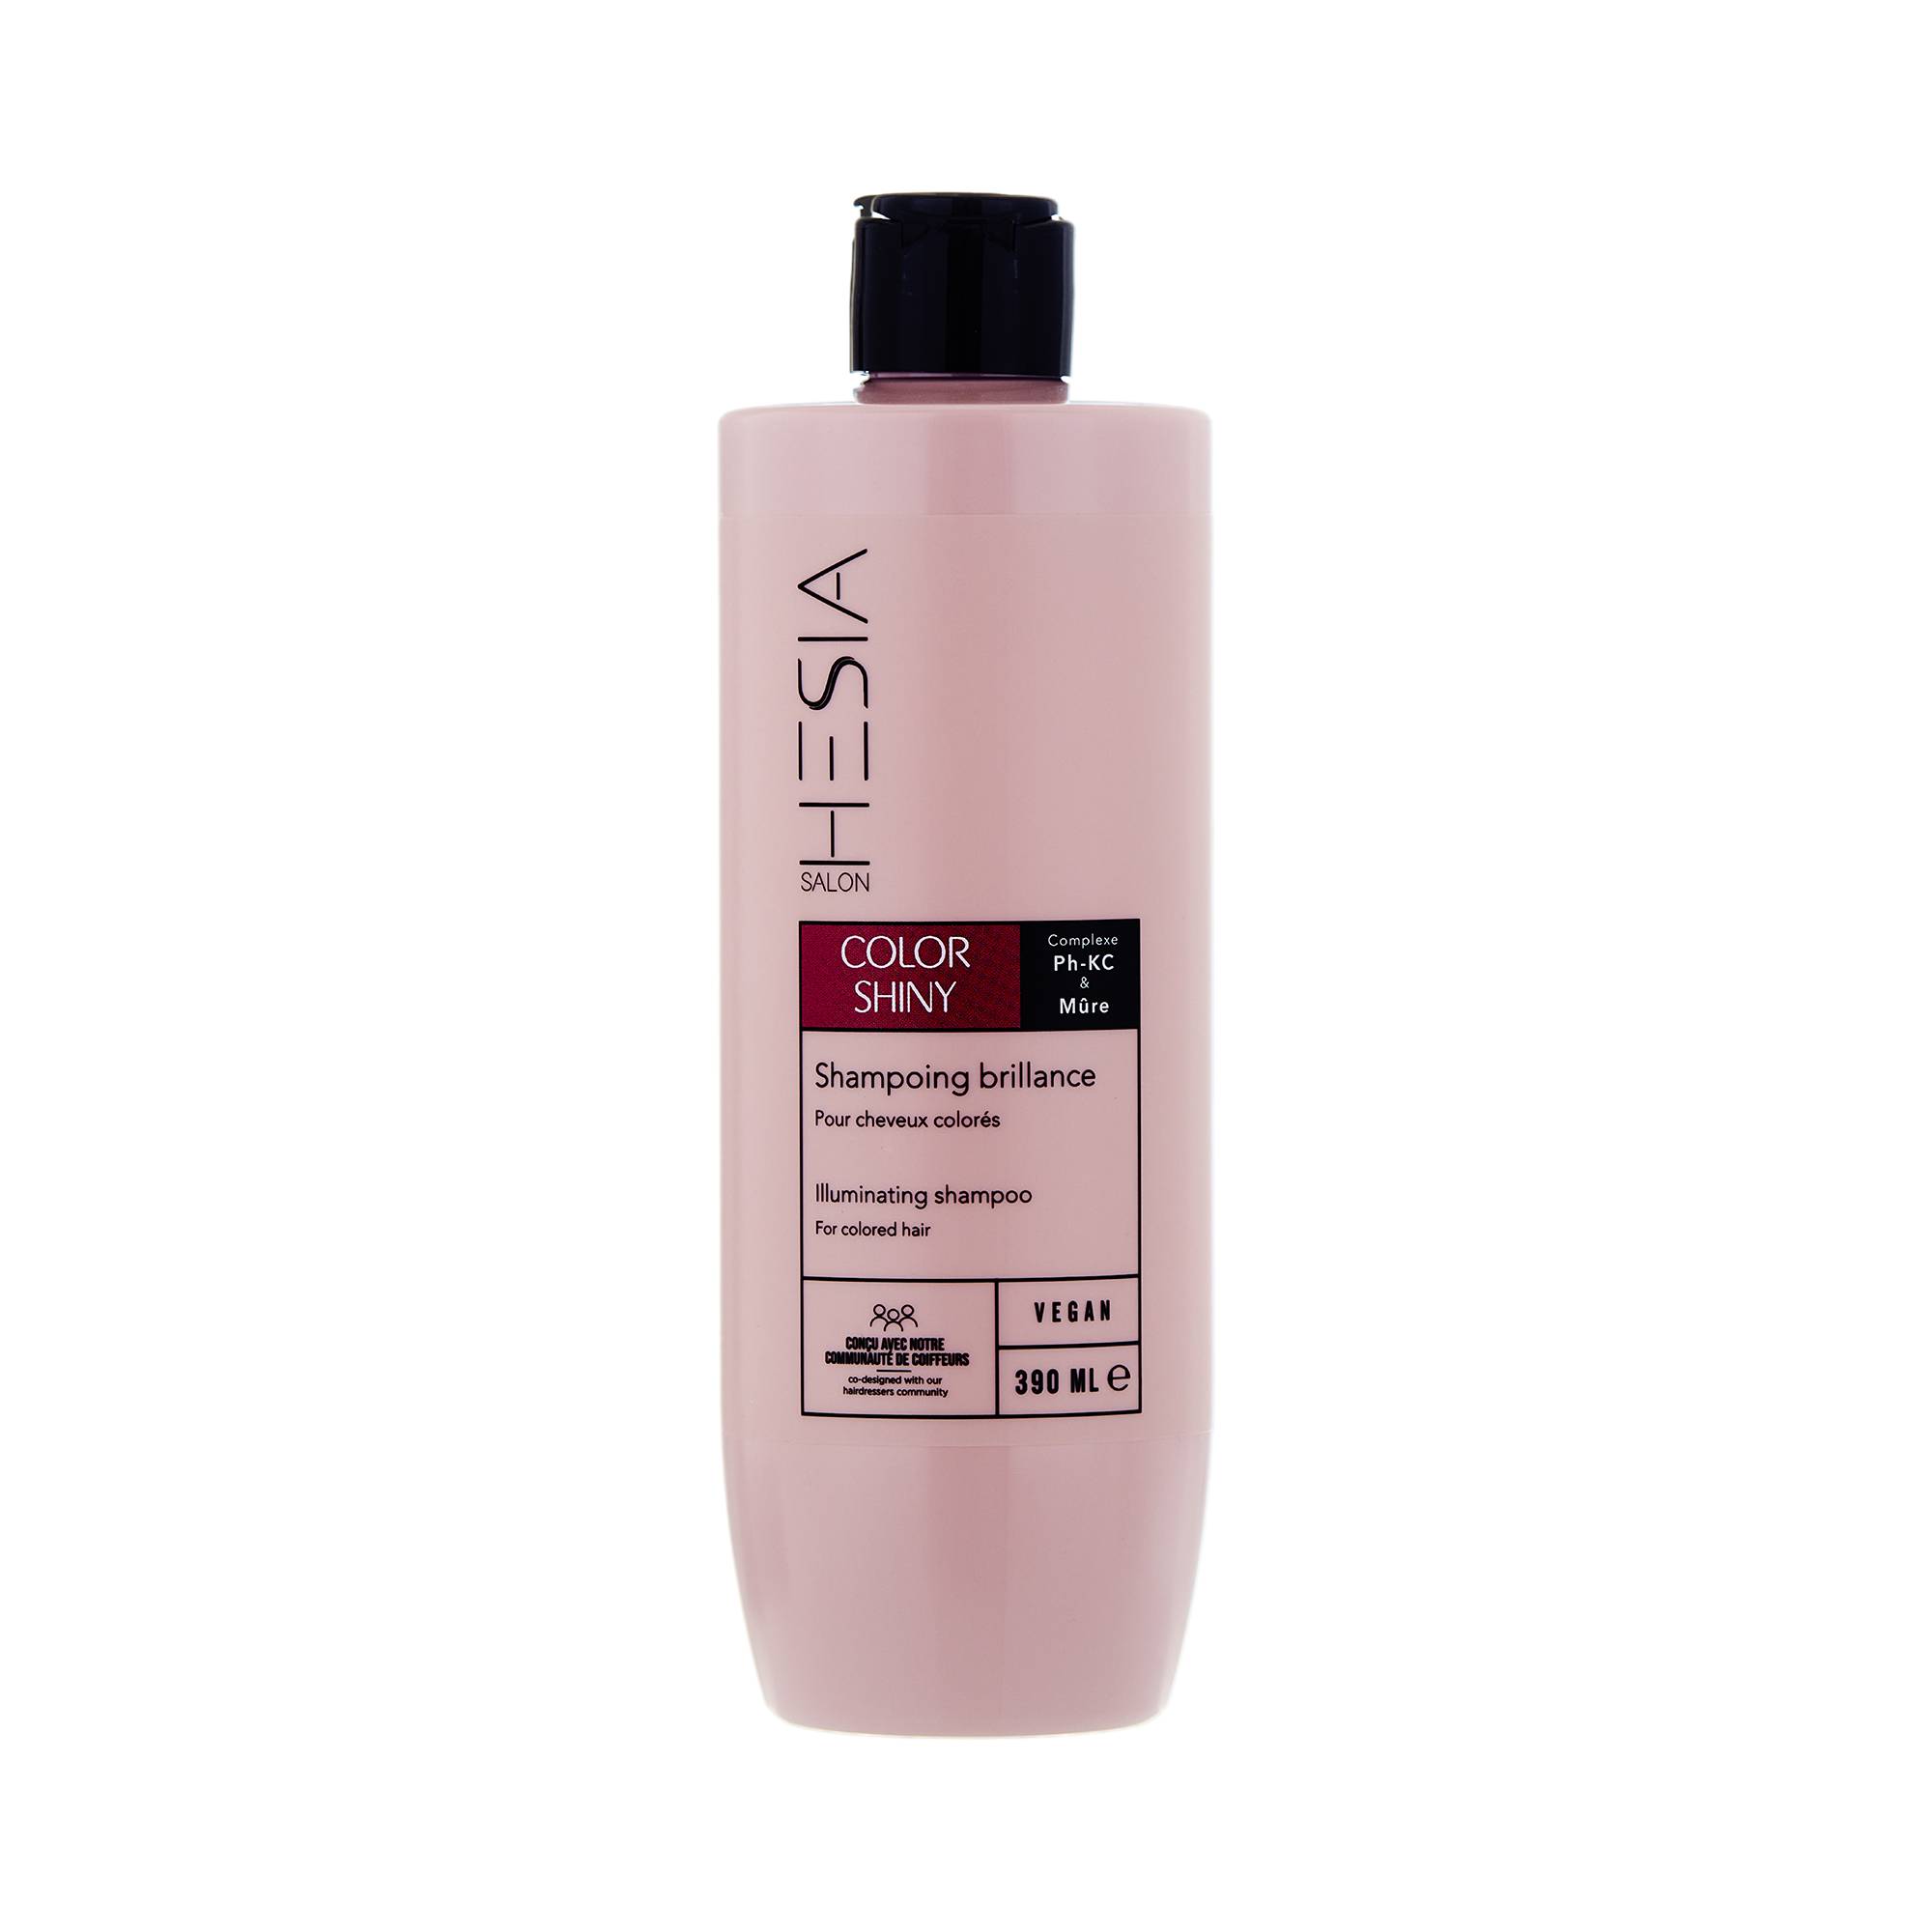 Shampoing brillance Color Shiny de la marque HESIA Salon Contenance 390ml - 1